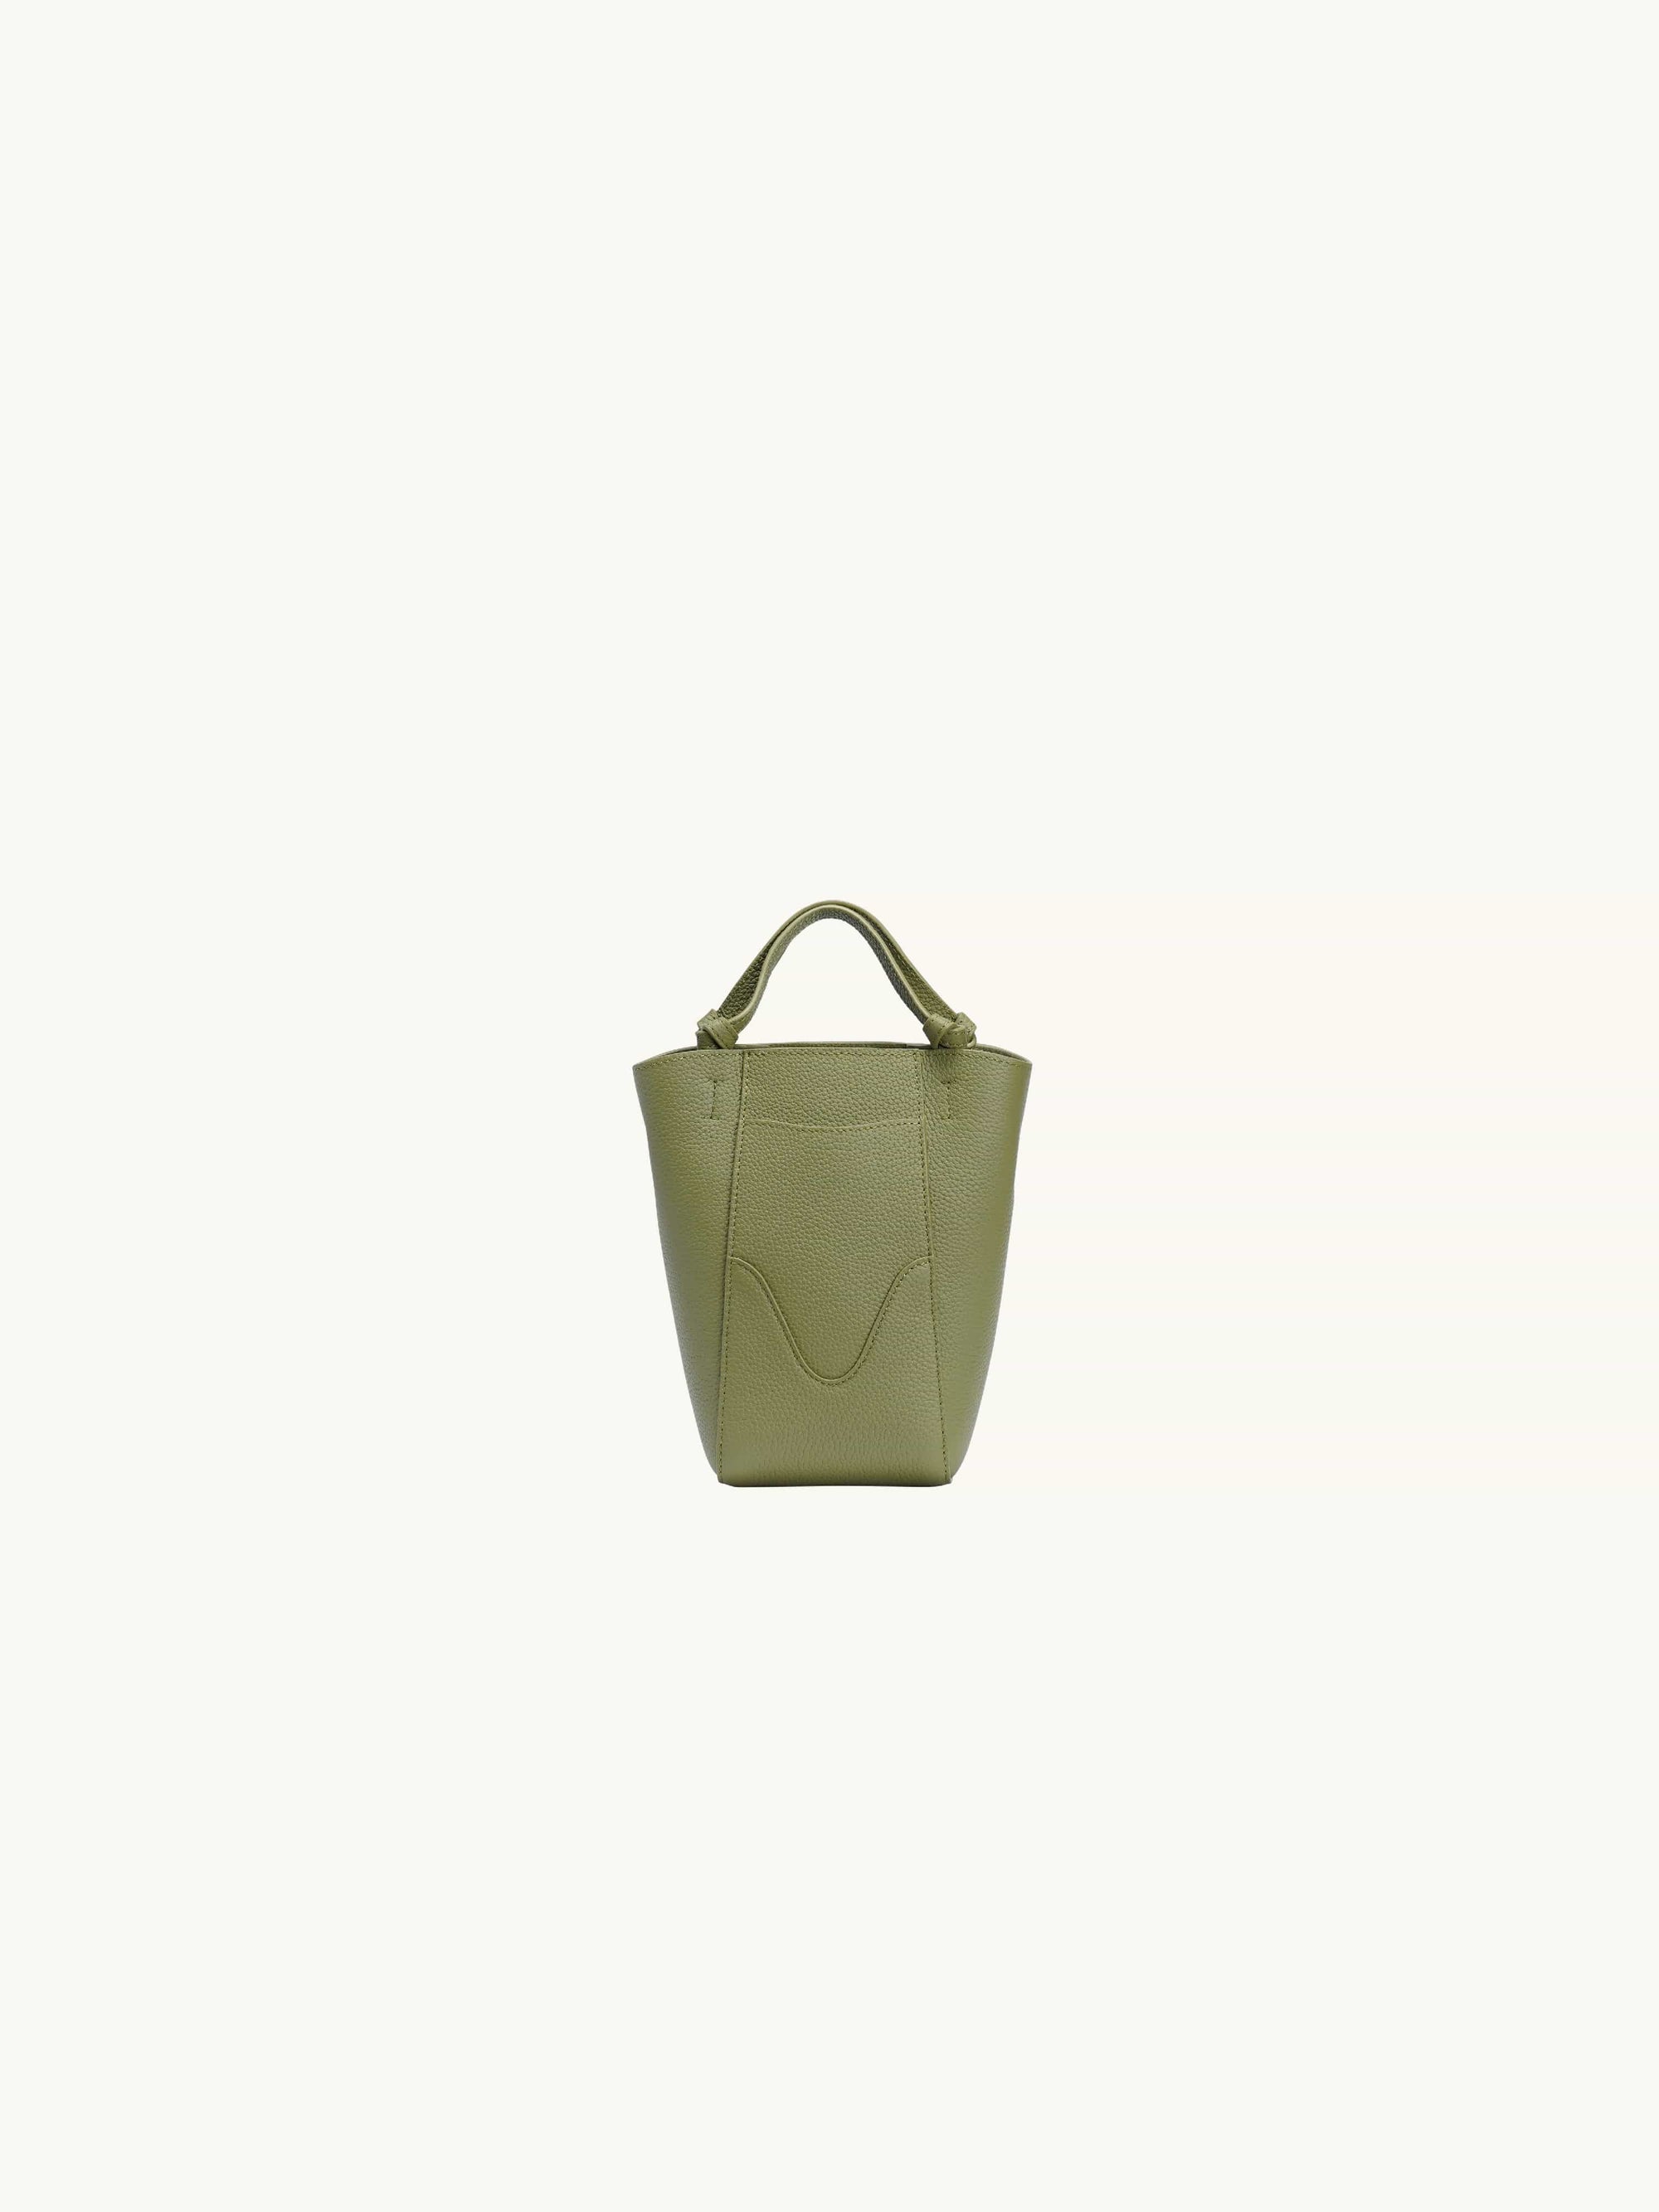 Nano Marina Bucket Bag Olive, Green Bucket Purse, OLEADA